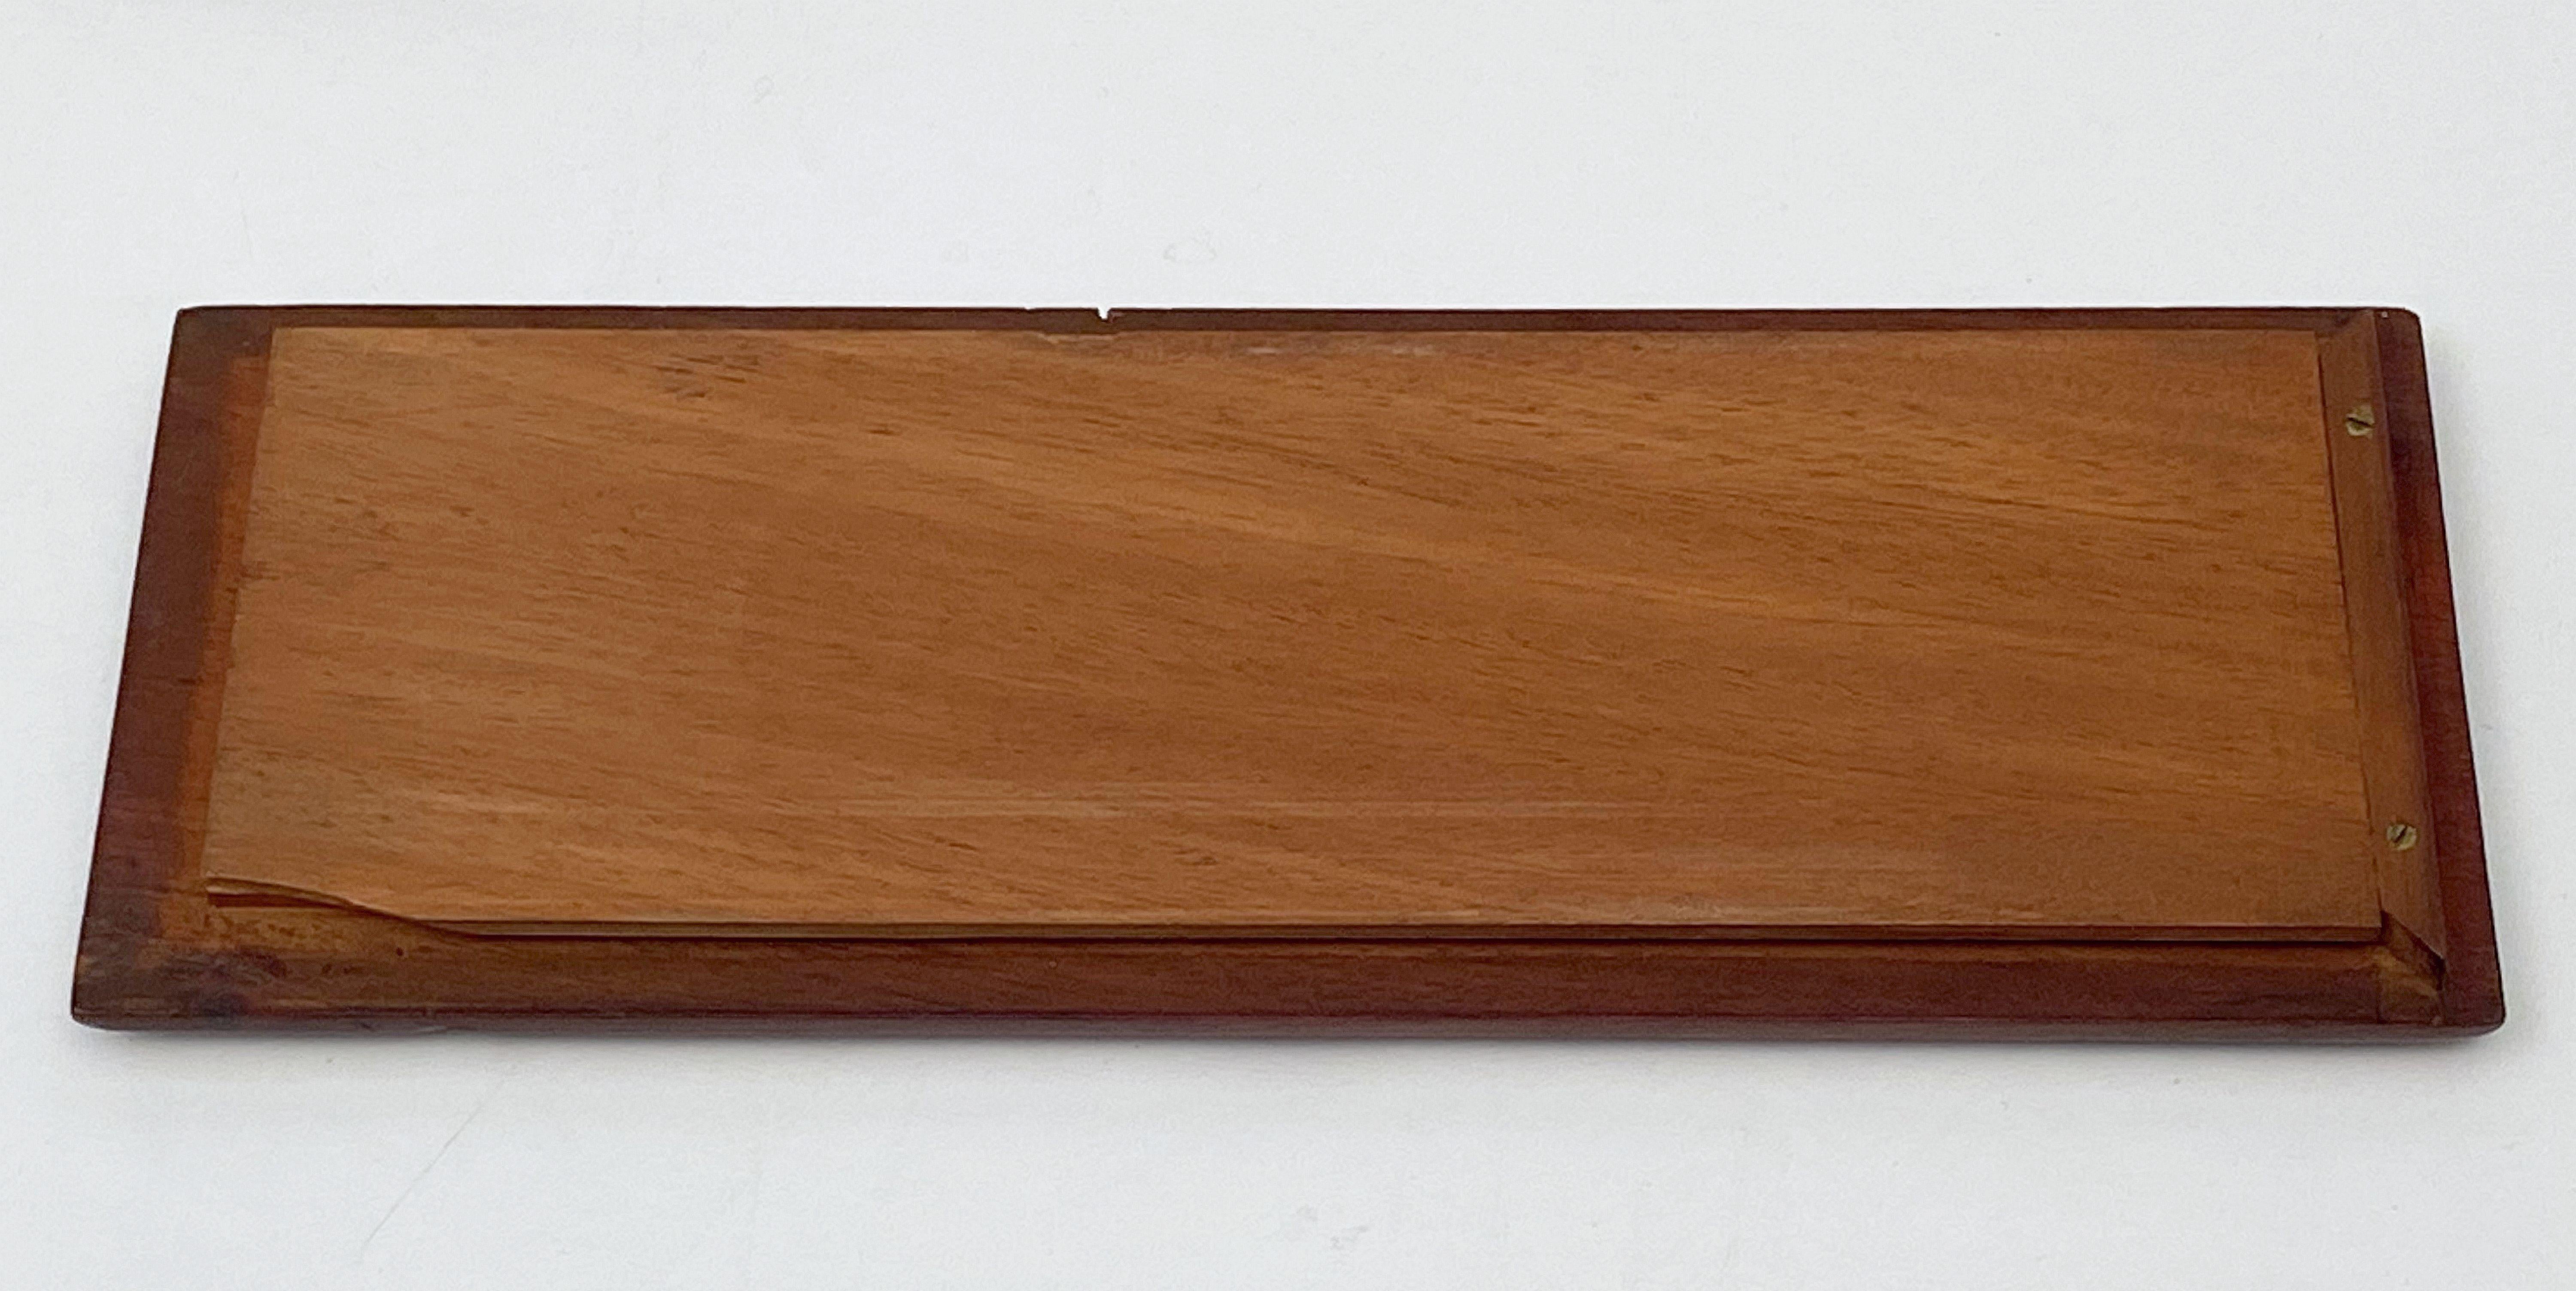 Wood English Cribbage Board or Game Box of Inlaid Mahogany